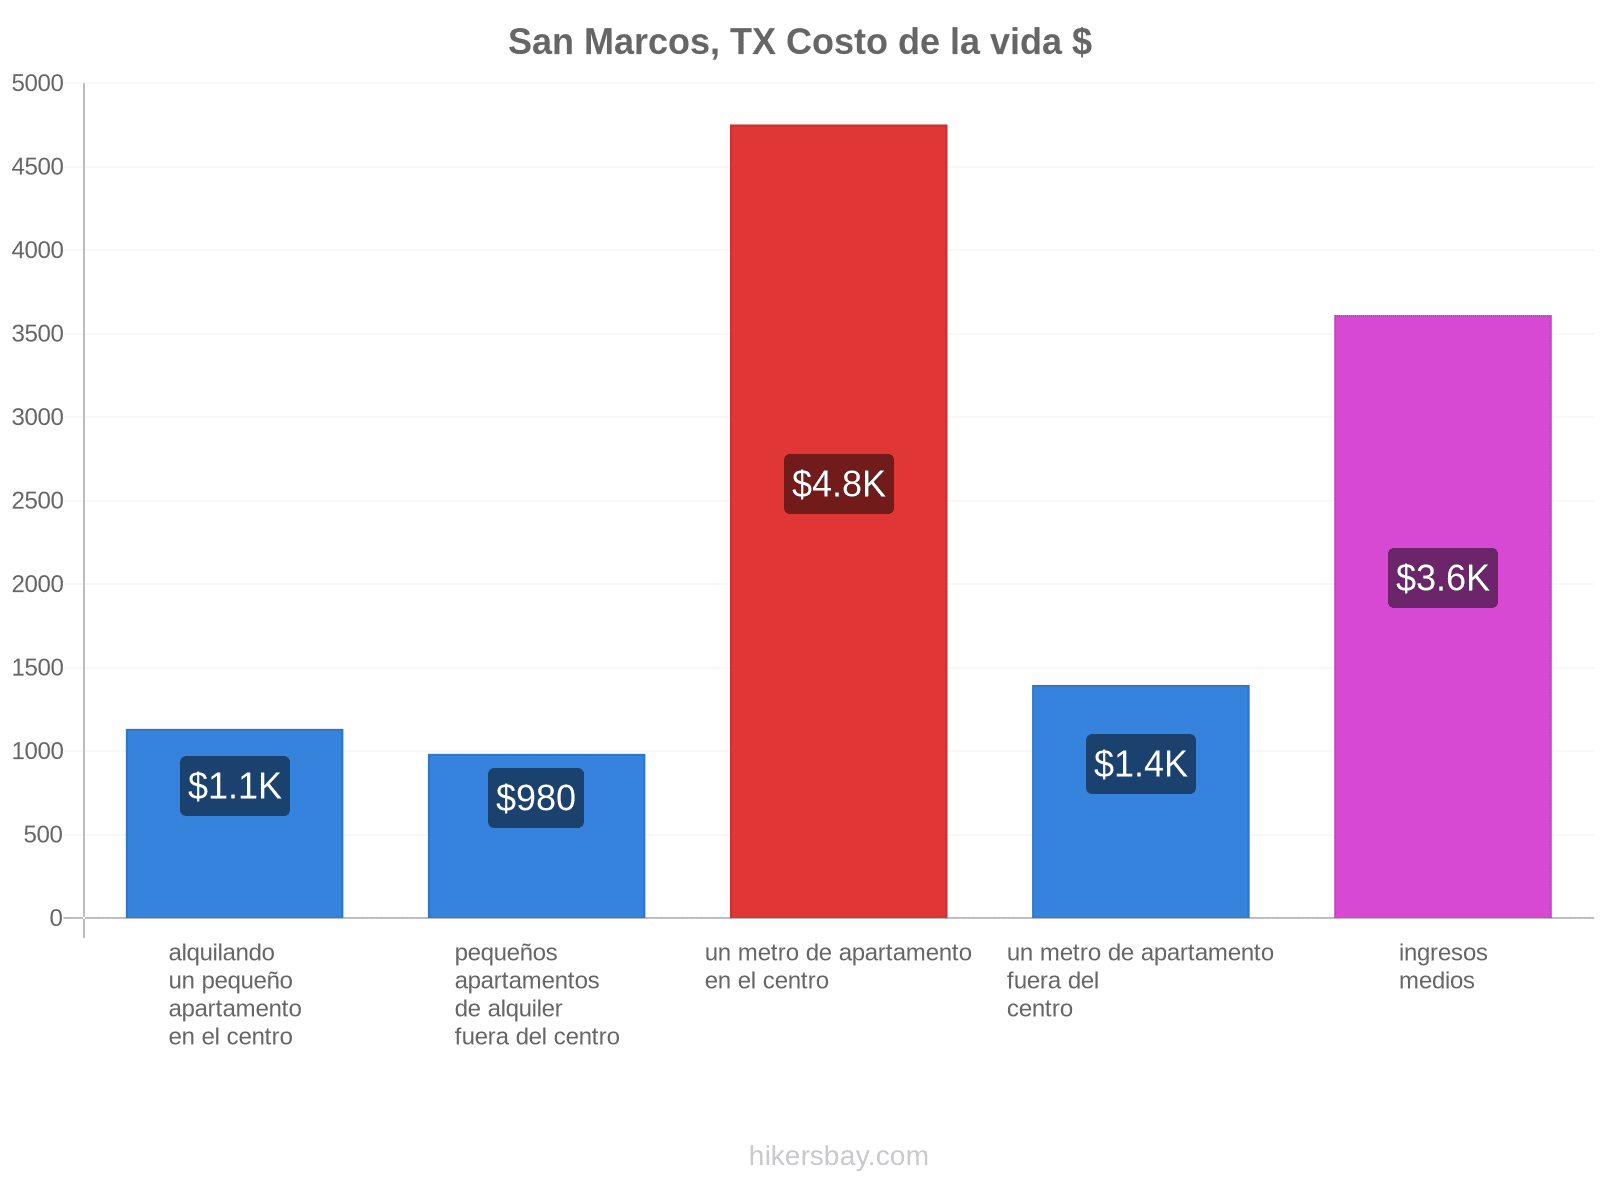 San Marcos, TX costo de la vida hikersbay.com